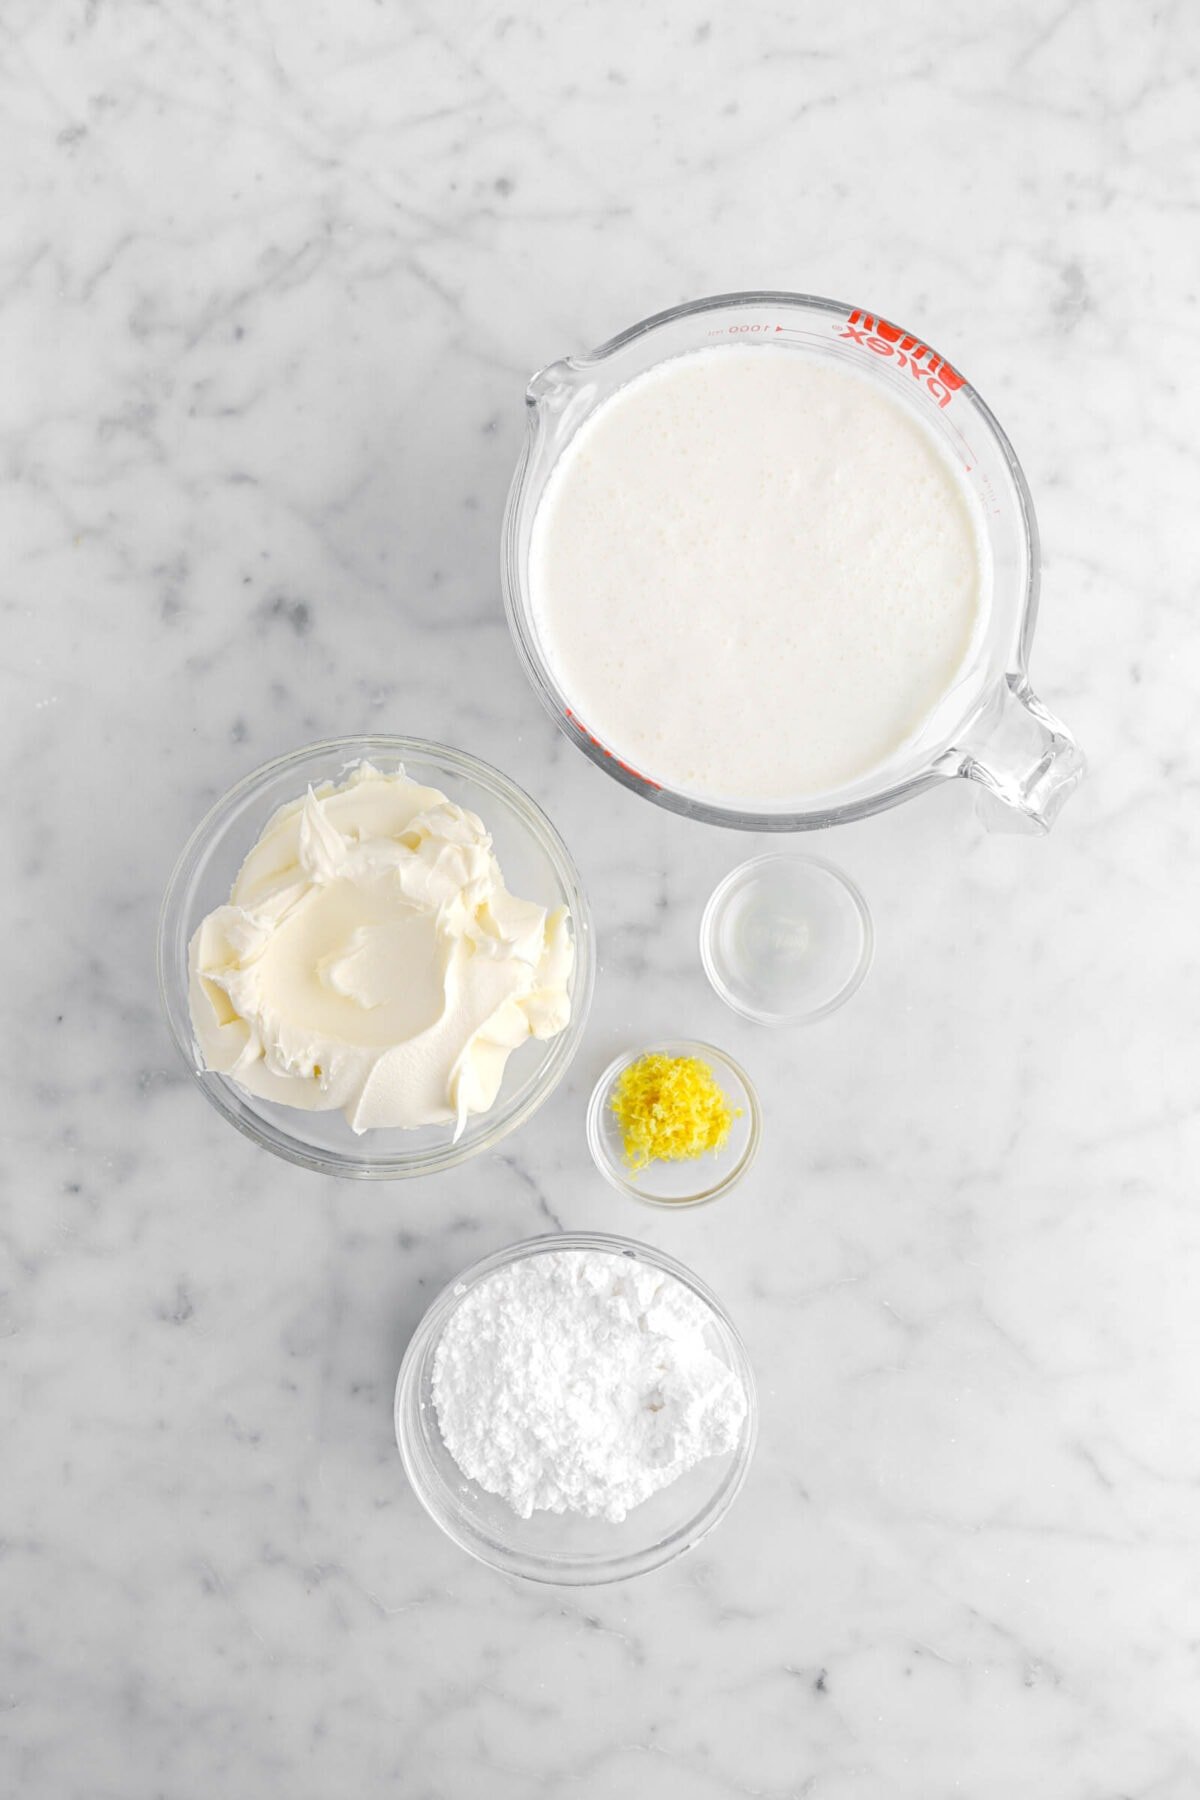 heavy cream, mascarpone, lemon juice, lemon zest, and powdered sugar on marble surface.